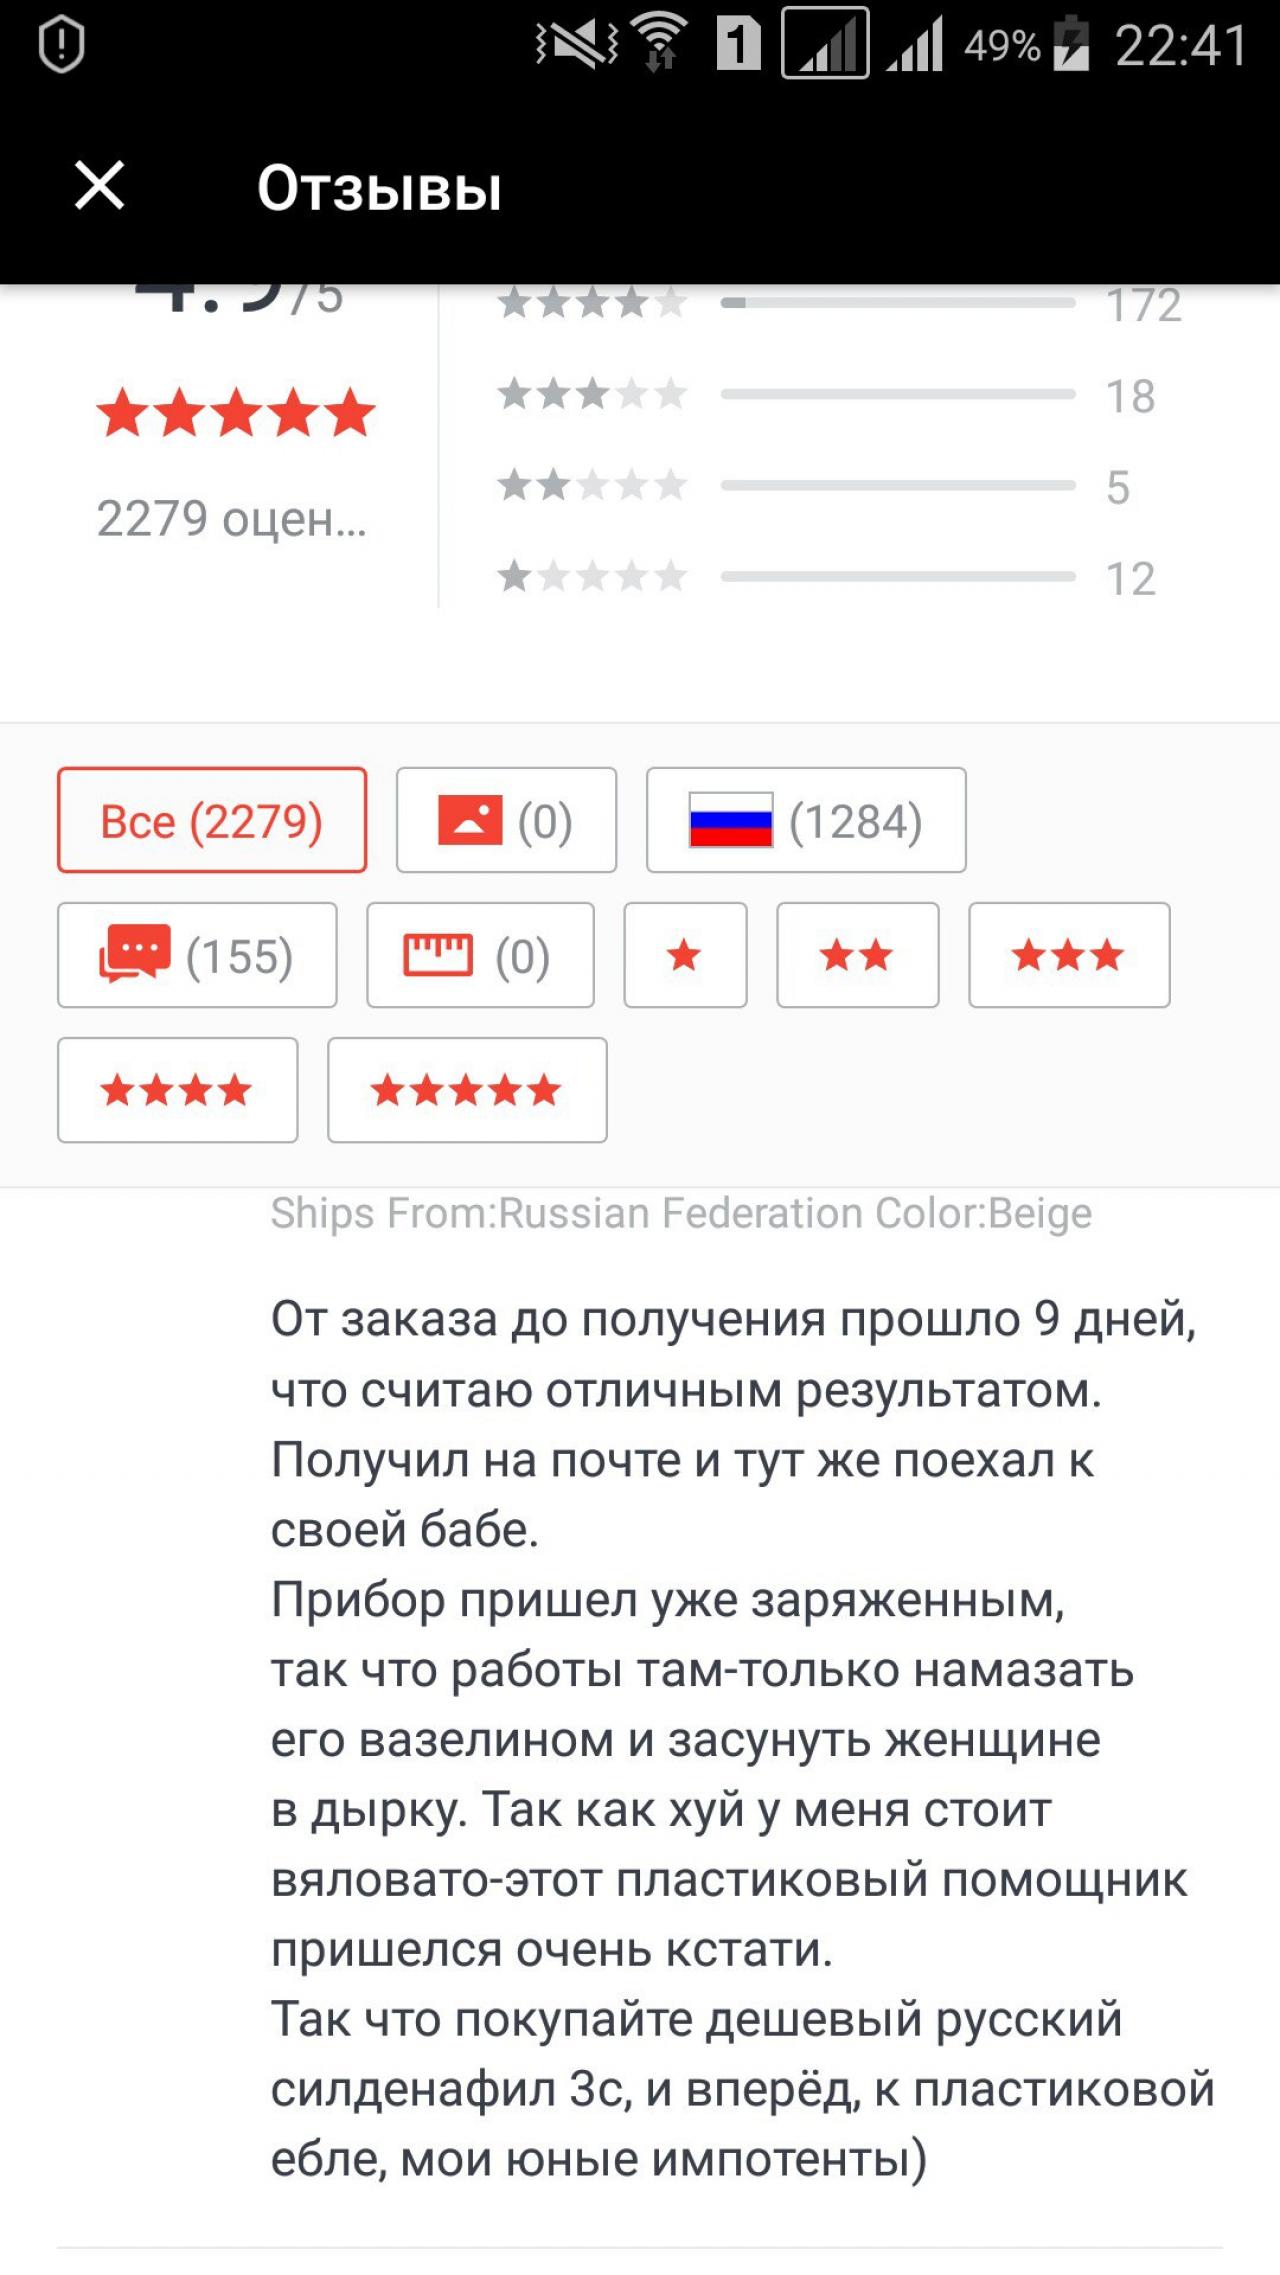 Какие отзывы пишут россияне в Алиэкспресс